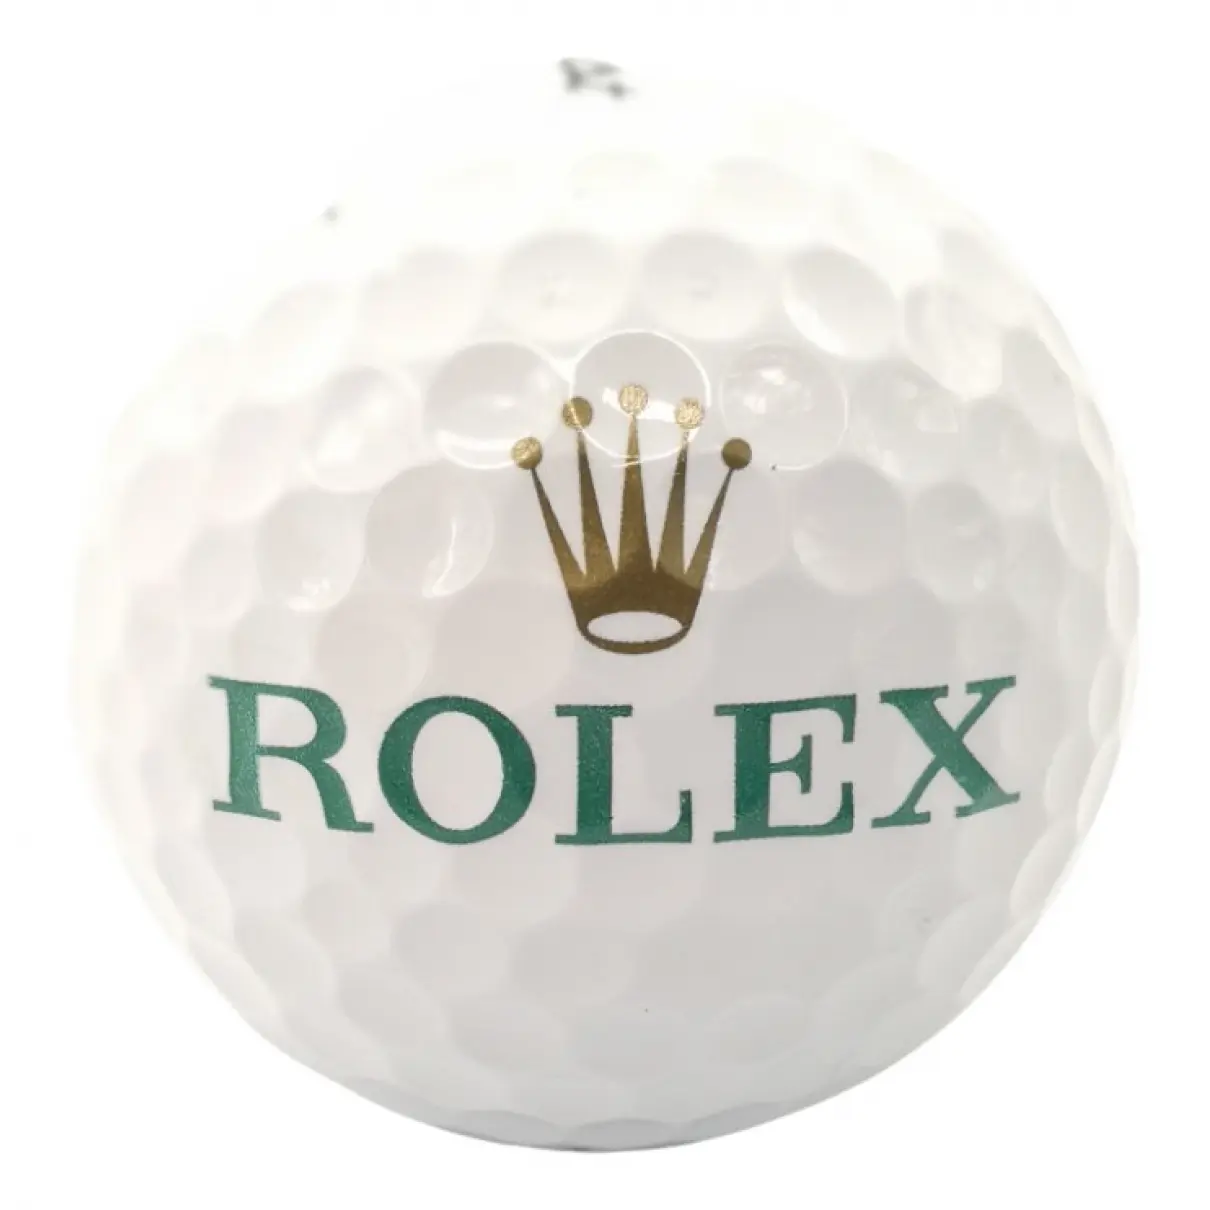 White Plastic Golf Rolex